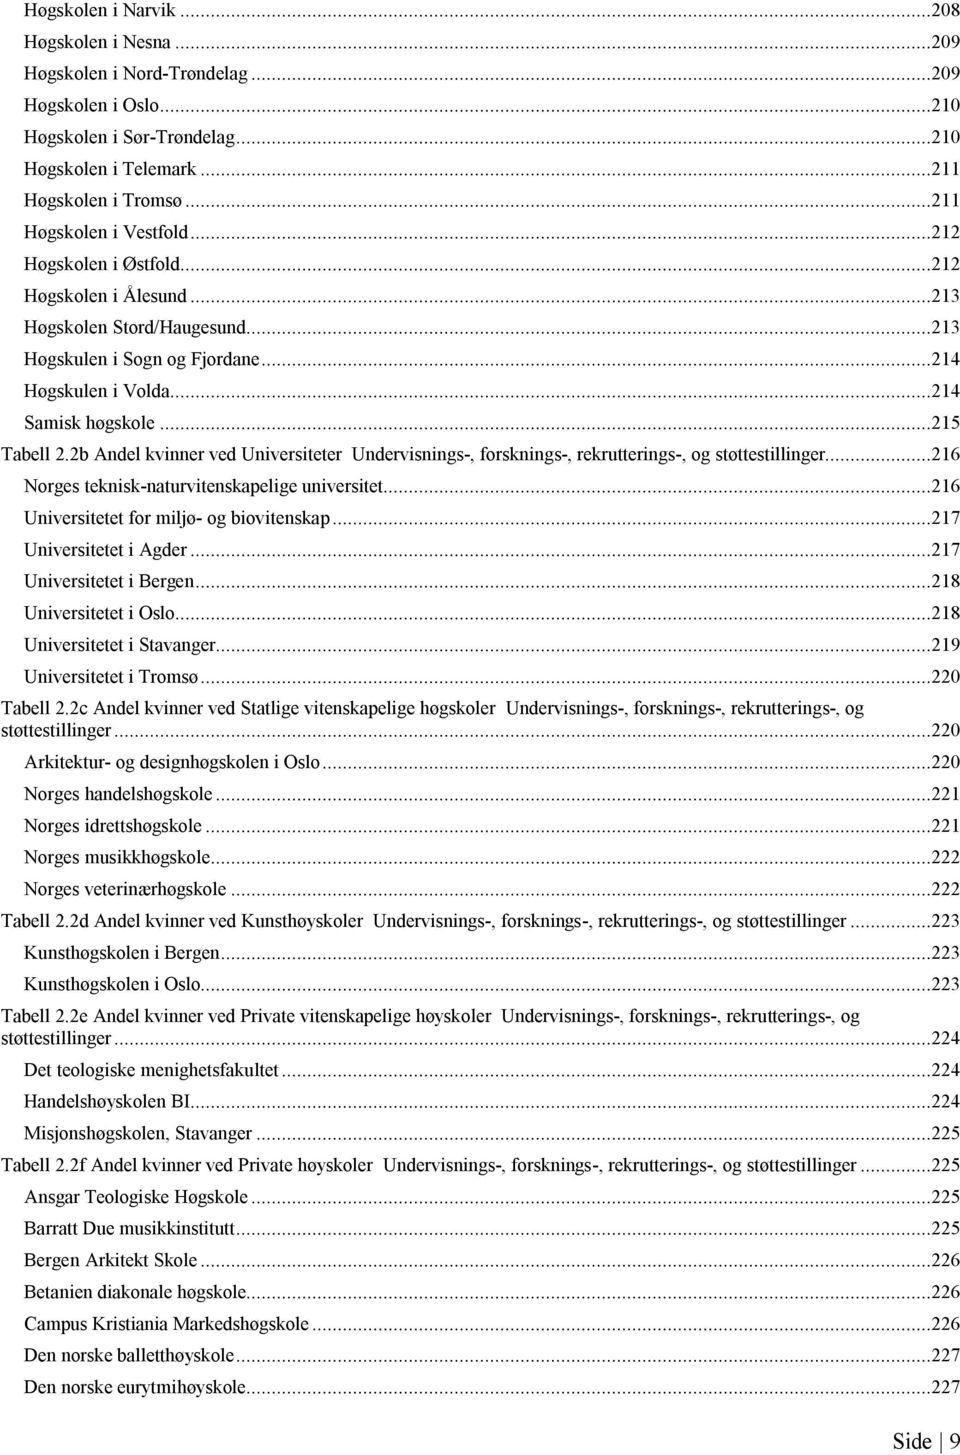 ..215 Tabell 2.2b Andel ved Universiteter Undervisnings-, forsknings-, rekrutterings-, og støttestillinger...216 Norges teknisk-naturvitenskapelige universitet.